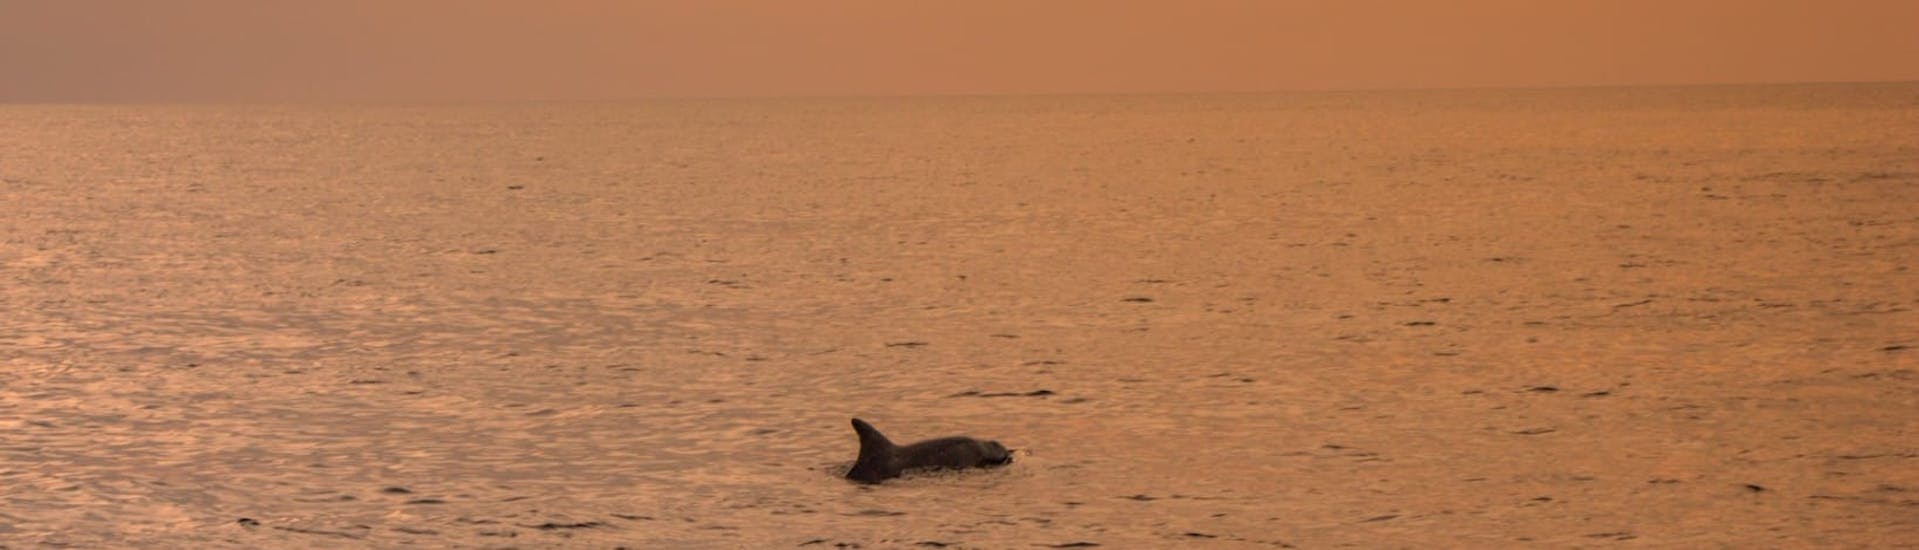 Ein Delfin im Meer während der  Delfinbeobachtungs-Tour während dem Sonnenuntergang in Fažana.